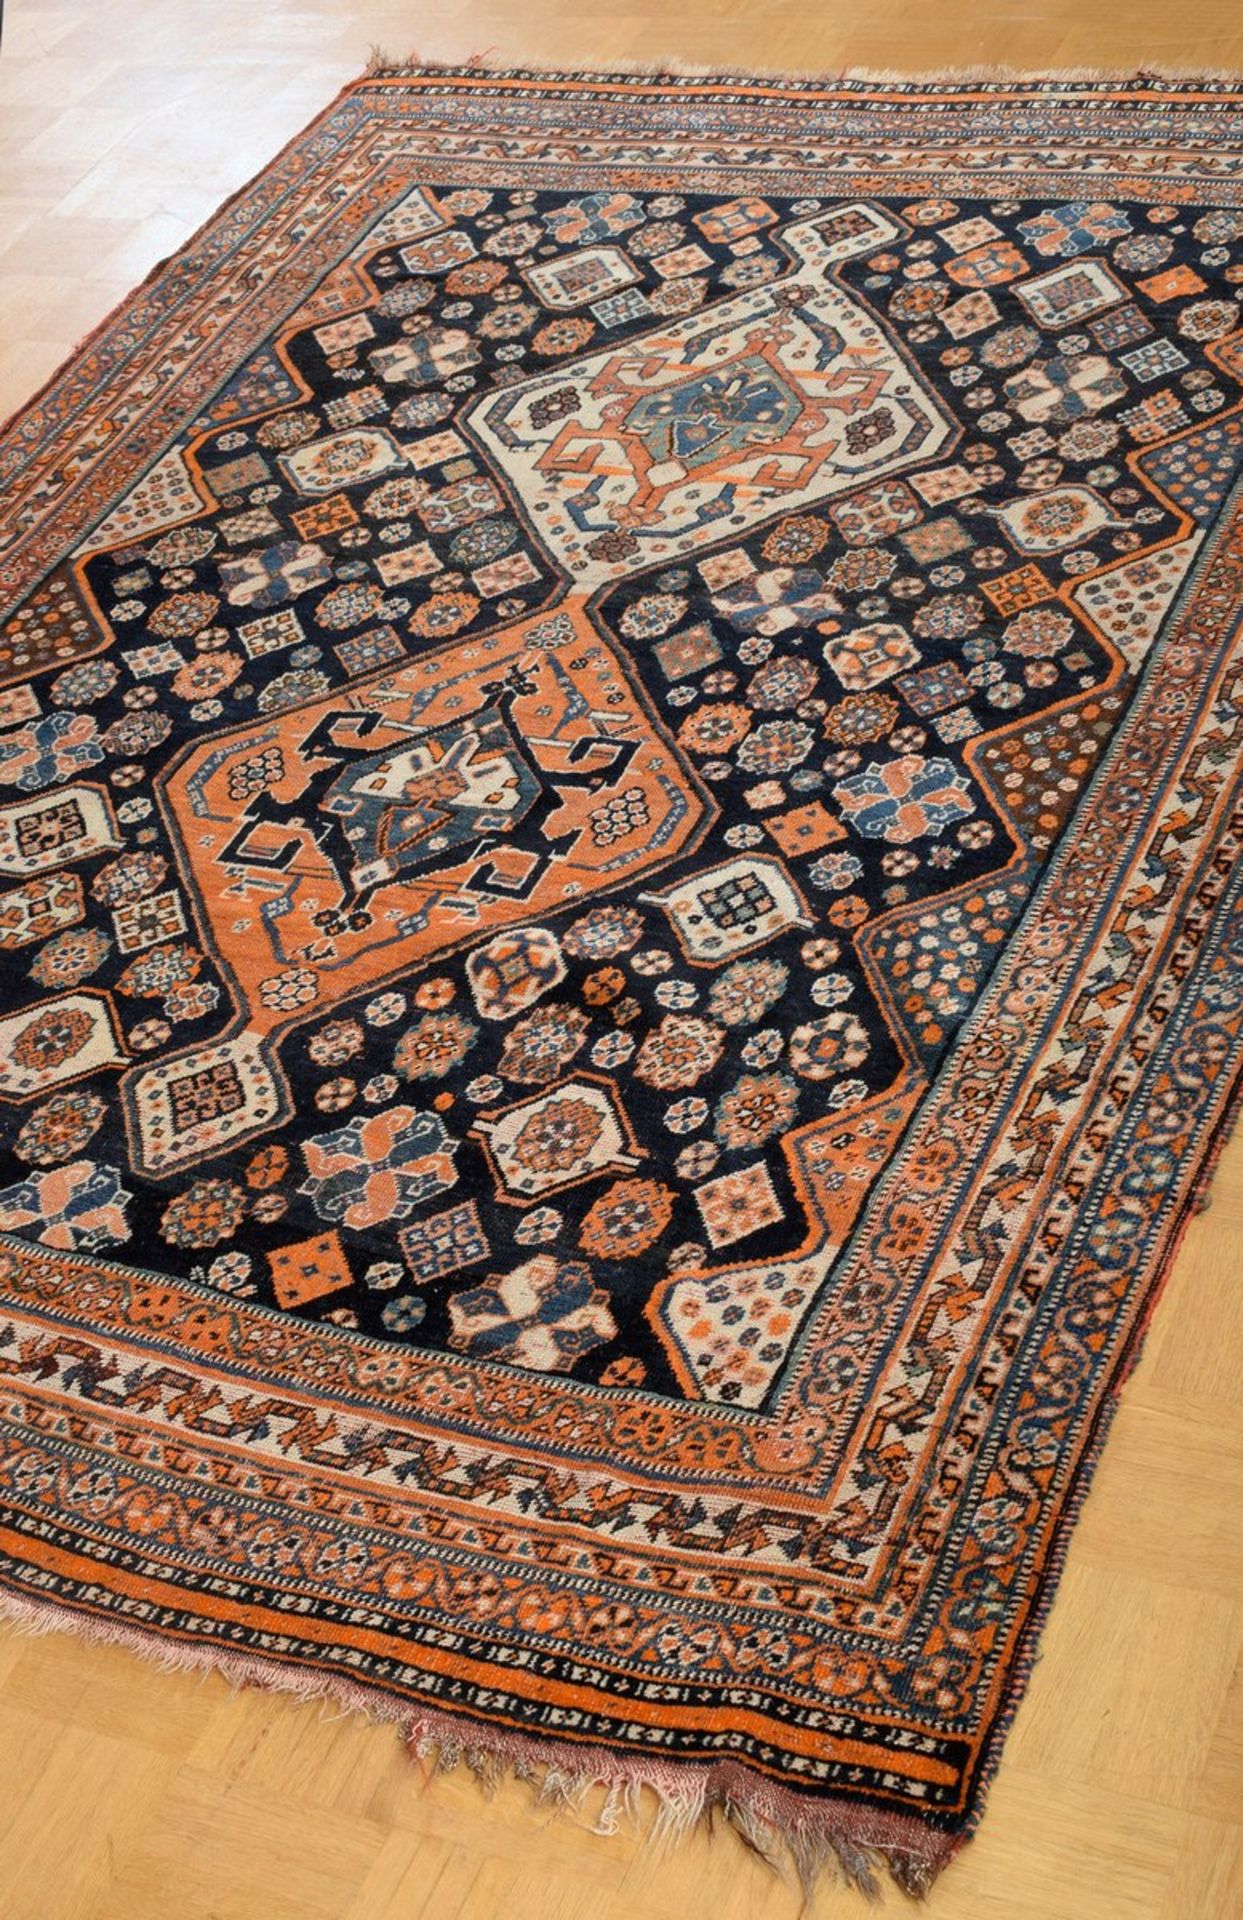 Kaschkai Teppich mit Doppelmedaillon auf vielfach ornamentiertem dunkelblauen Mittelfeld in